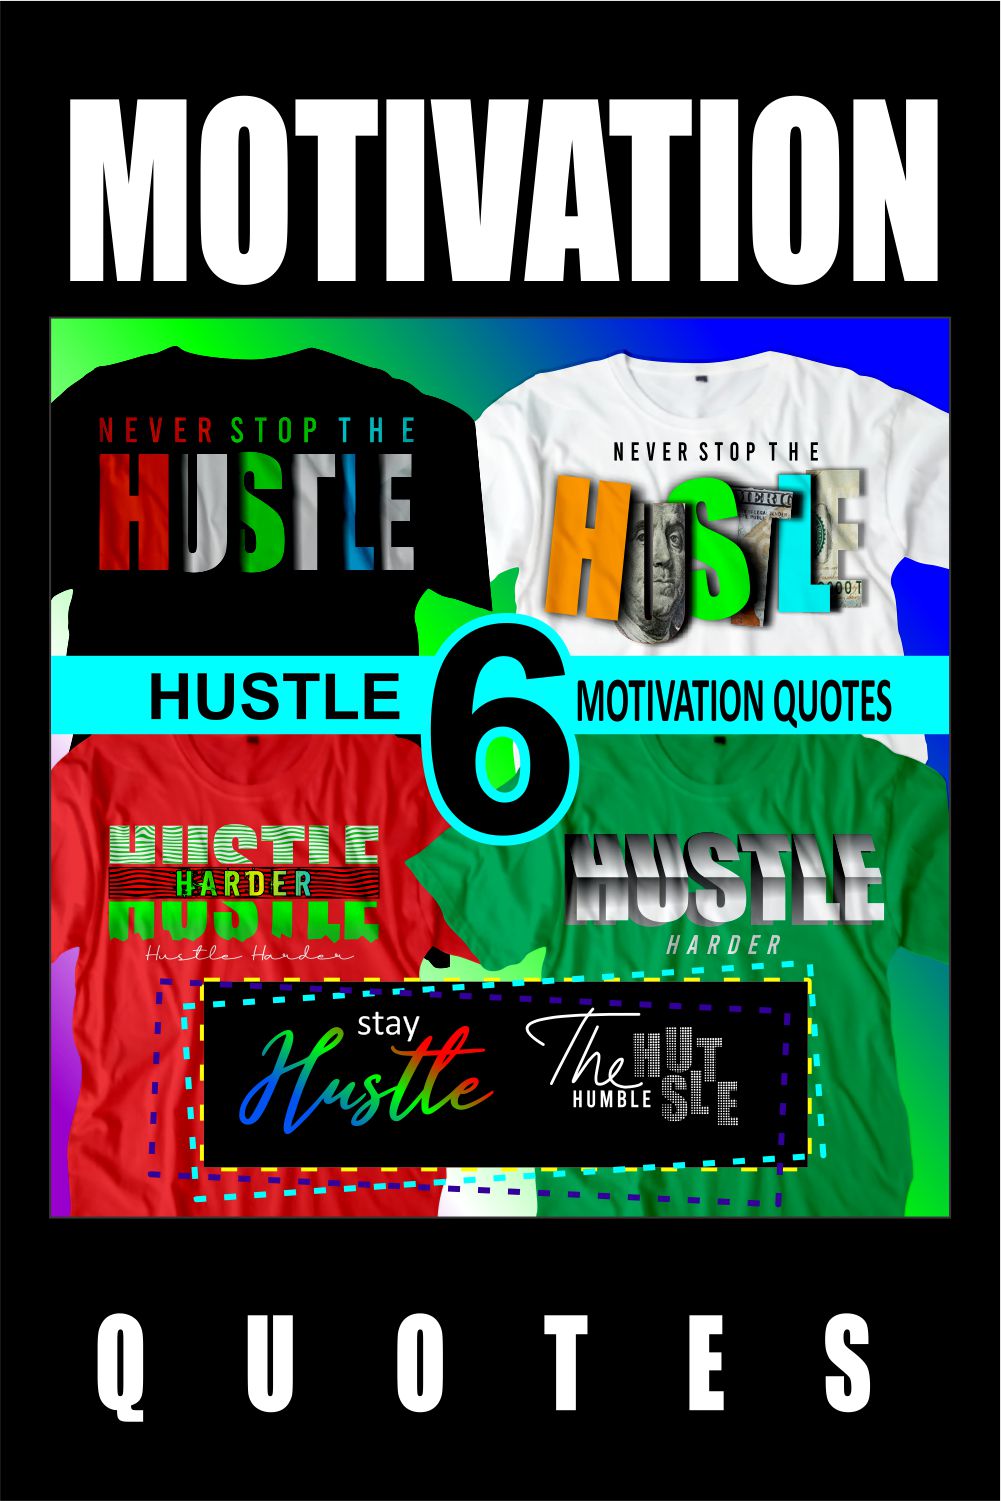 Hustle Motivation Quotes pinterest.